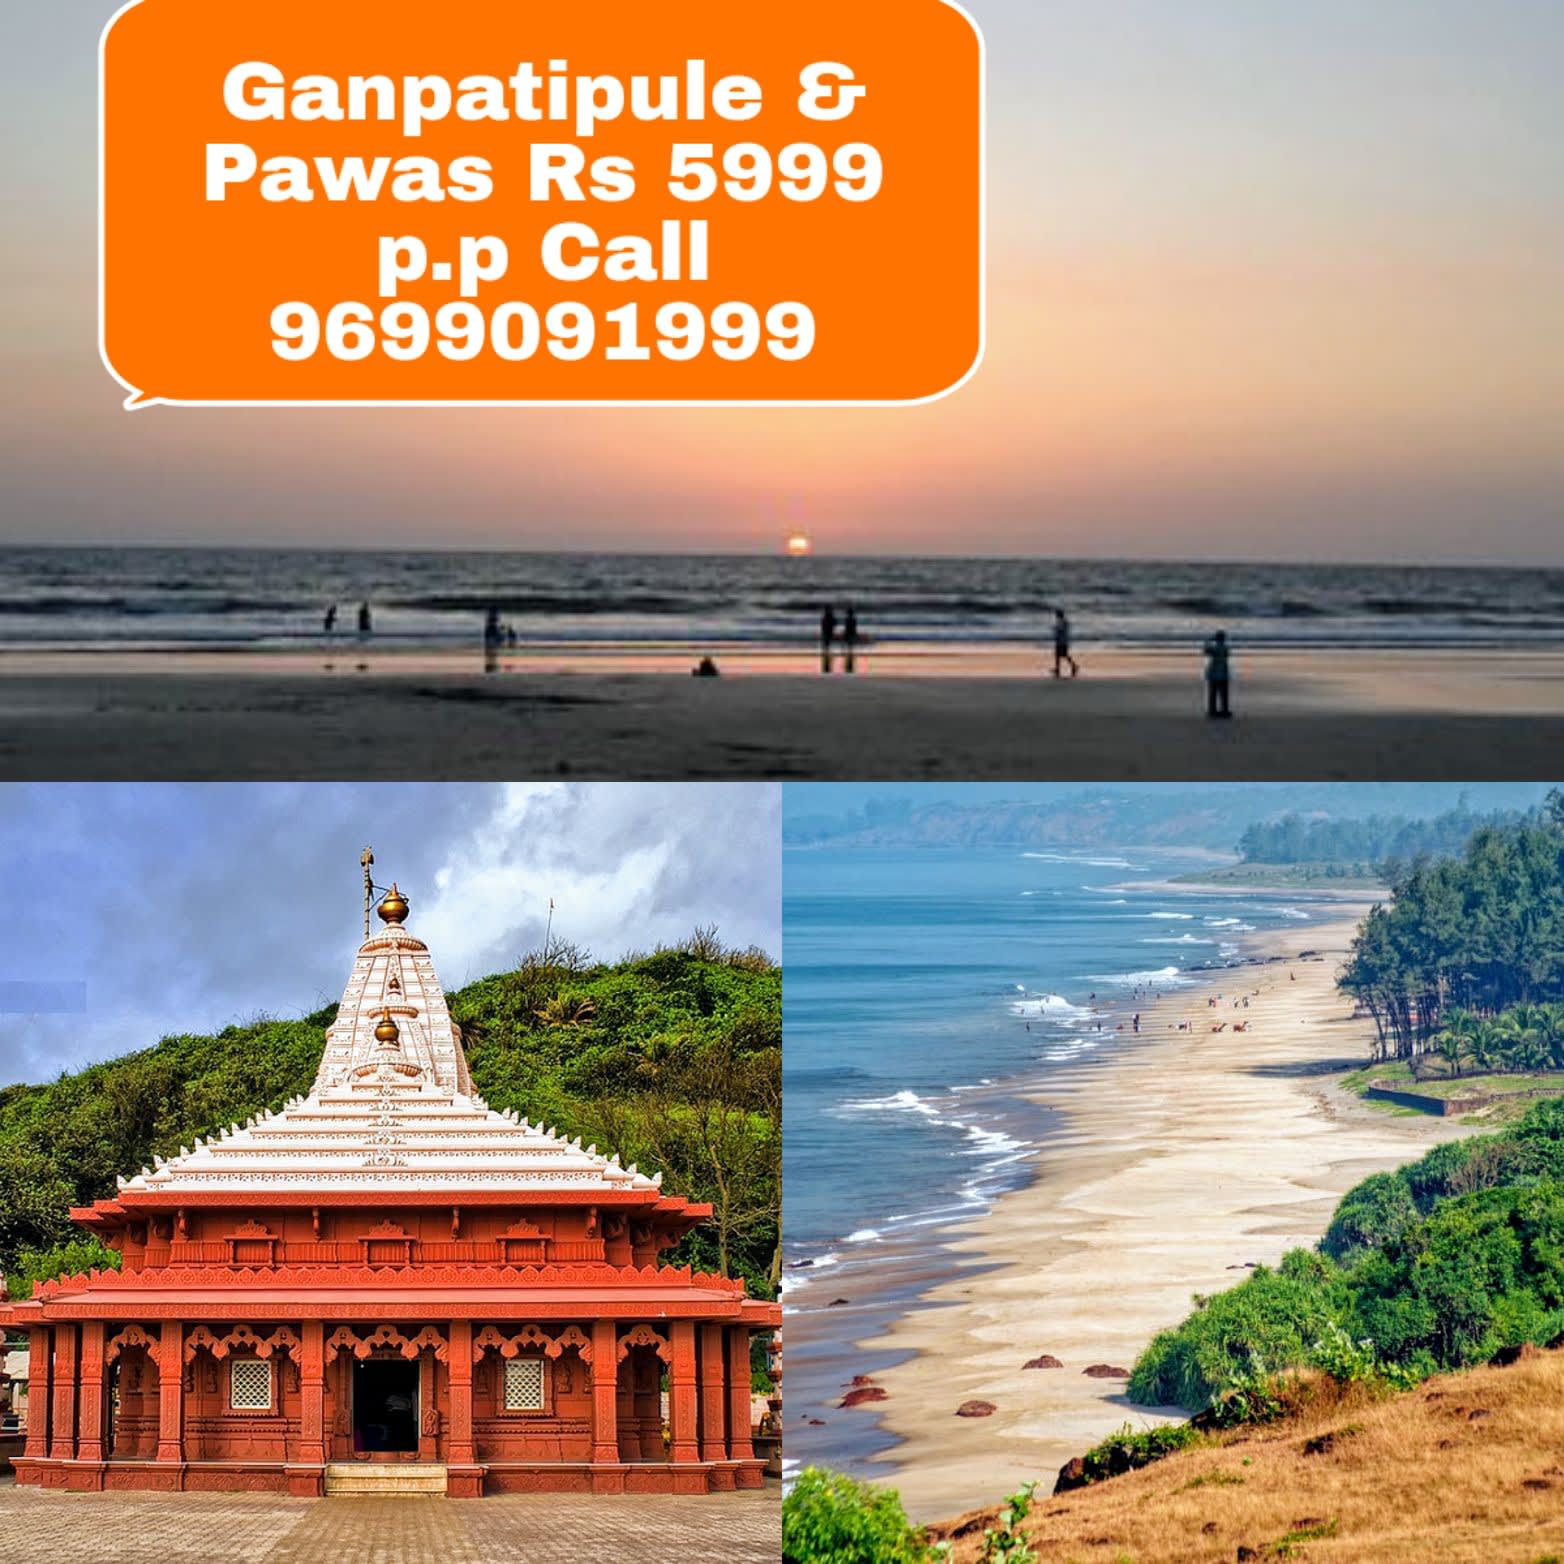 places to visit between mumbai and ganpatipule